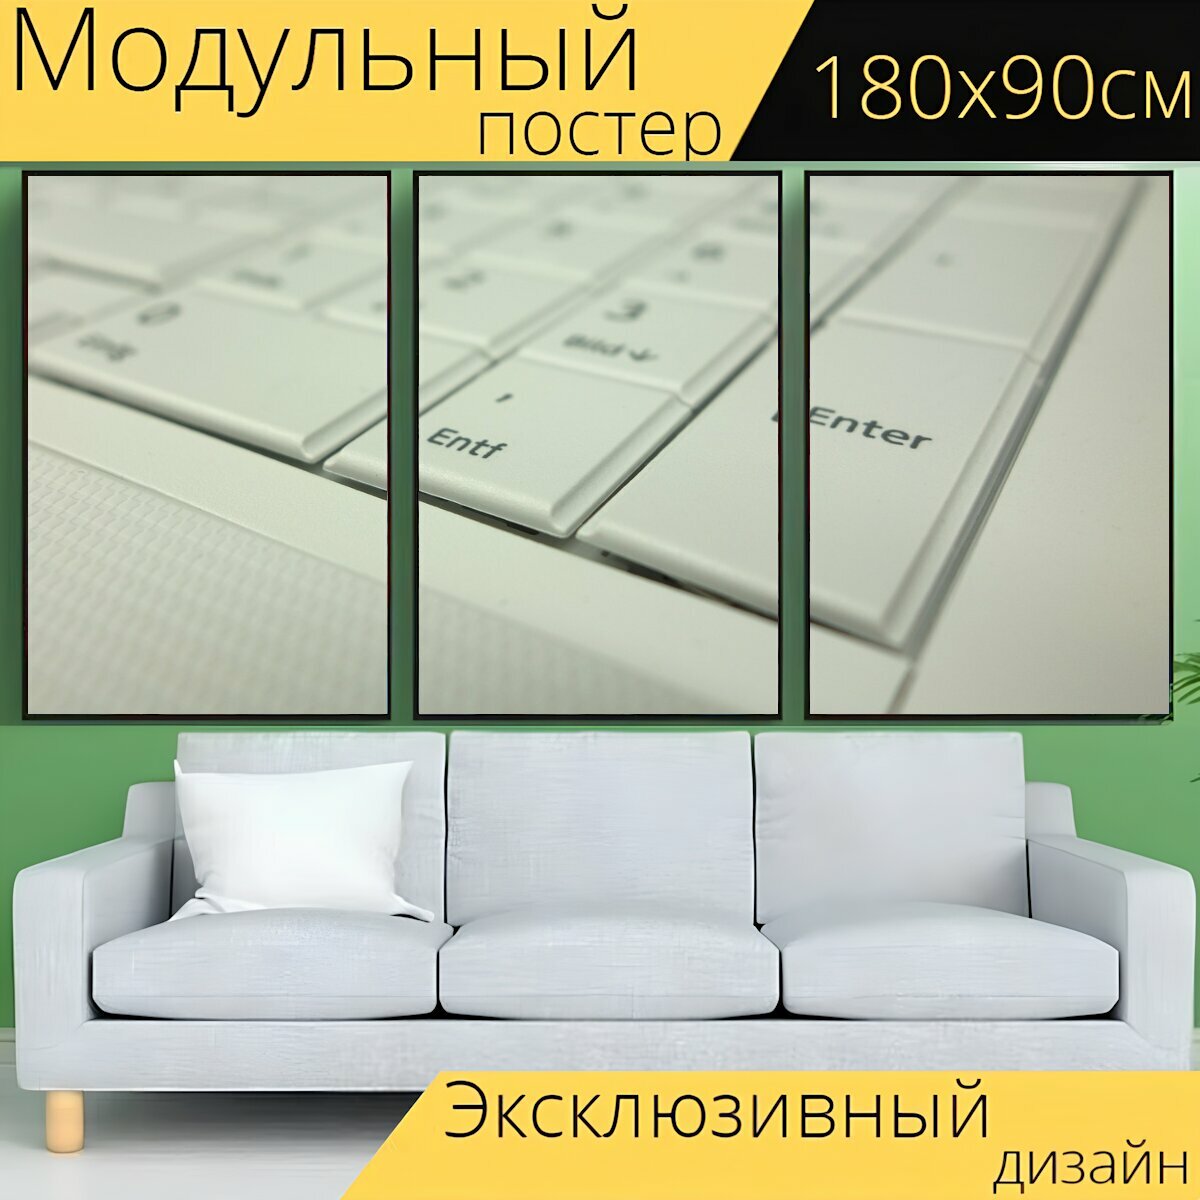 Модульный постер "Введите, клавиатура, ноутбук" 180 x 90 см. для интерьера